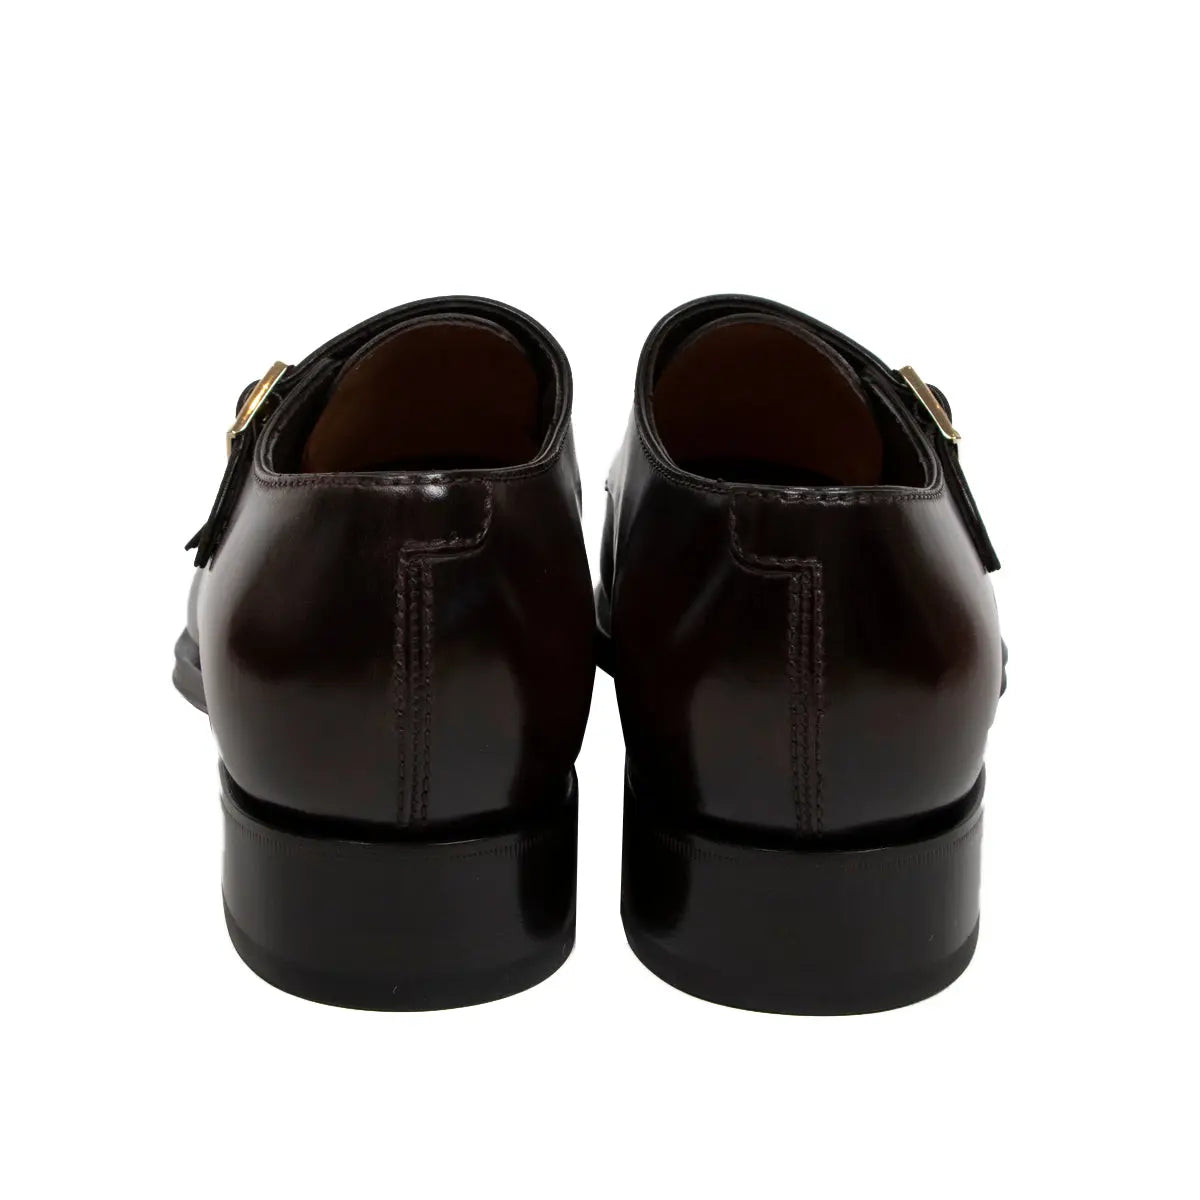 Polished Oxblood Leather Double Buckle Shoe  Santoni   